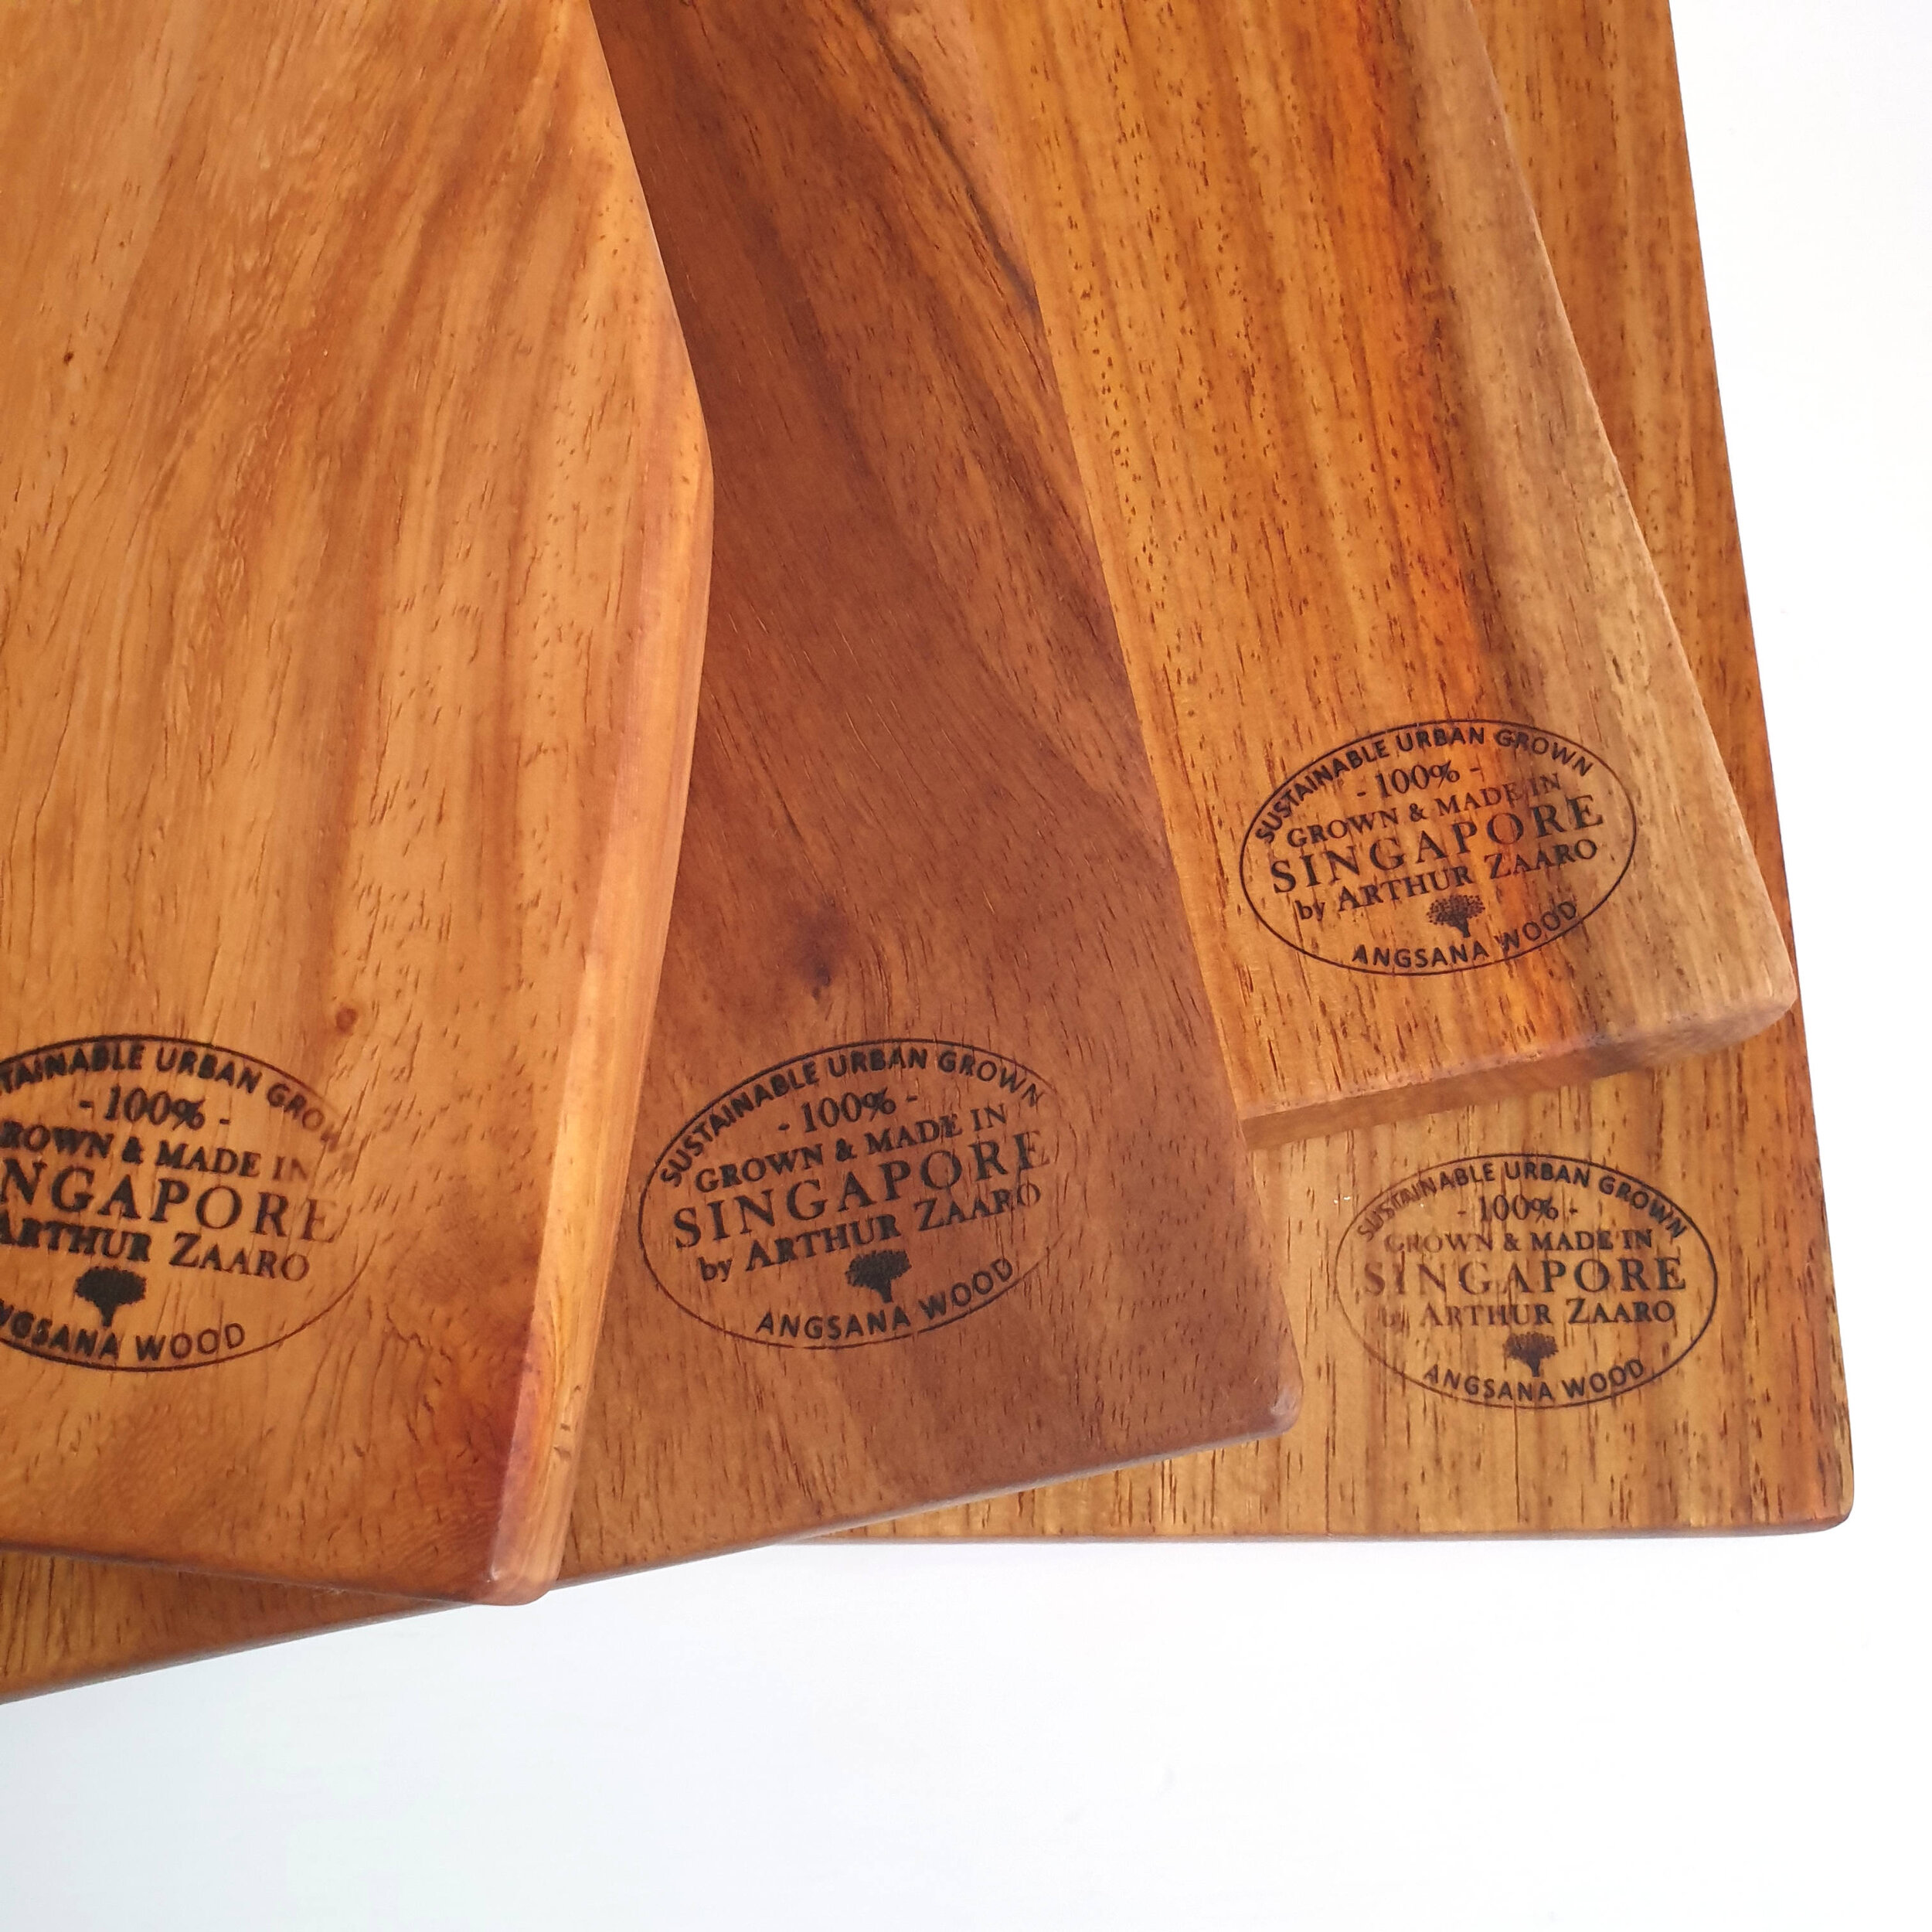 Angsana Wood Boards